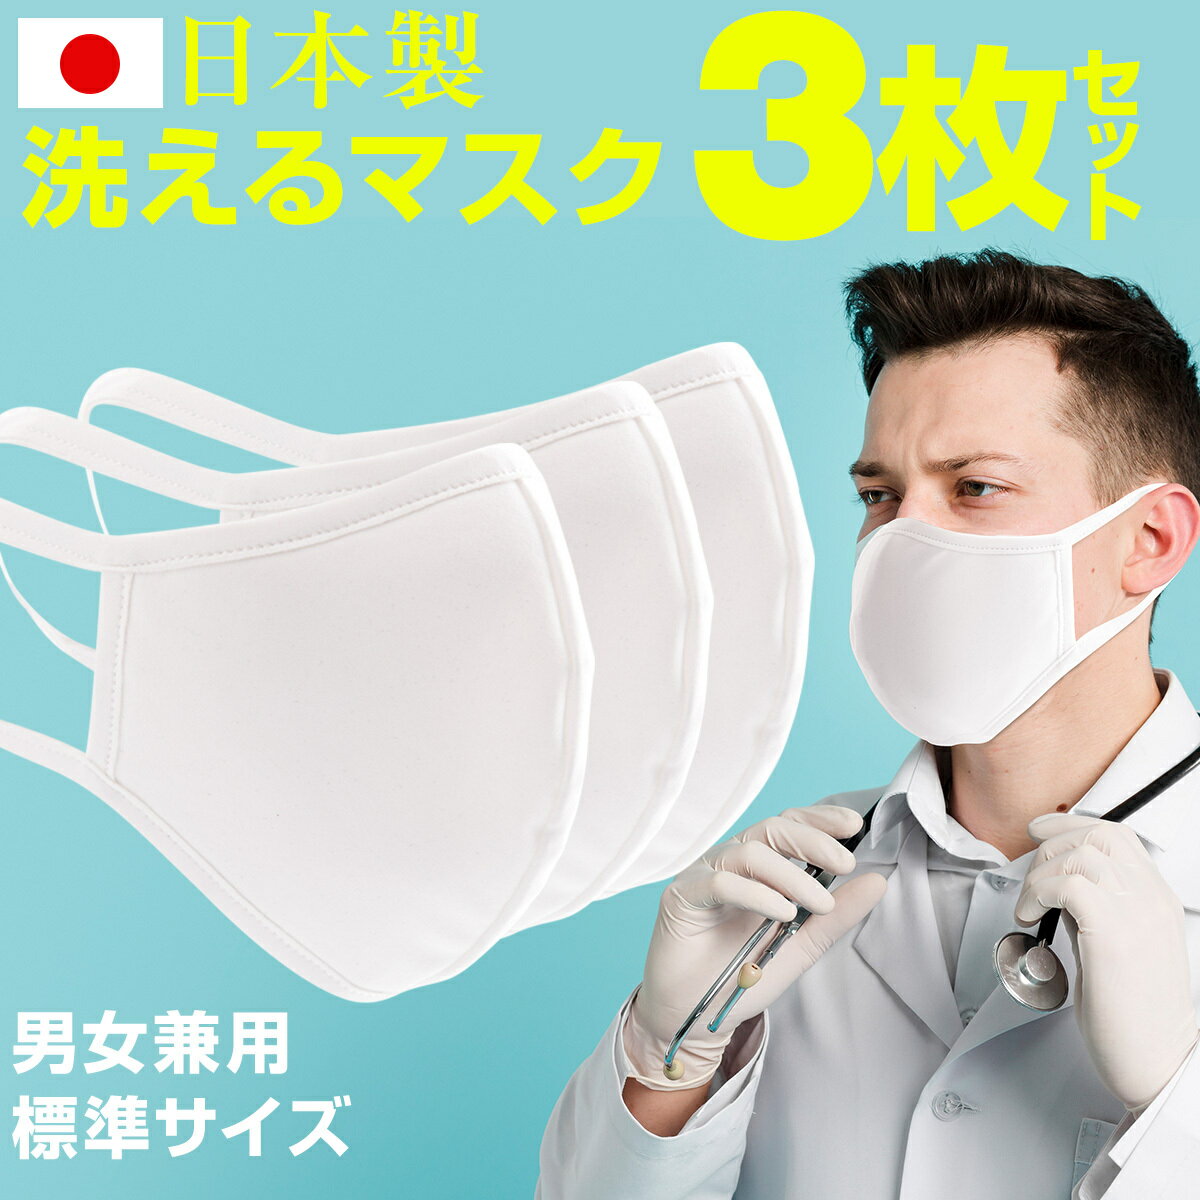 【最大30 offクーポン】 3枚セット 洗えるマスク 東レ素材使用 日本製 水着素材 日焼け UVカット 対策 蒸れない 立体 男性用 女性用 布マスク 個包装 おしゃれ 繰り返し 白 繰り返し洗える 涼しい MASK